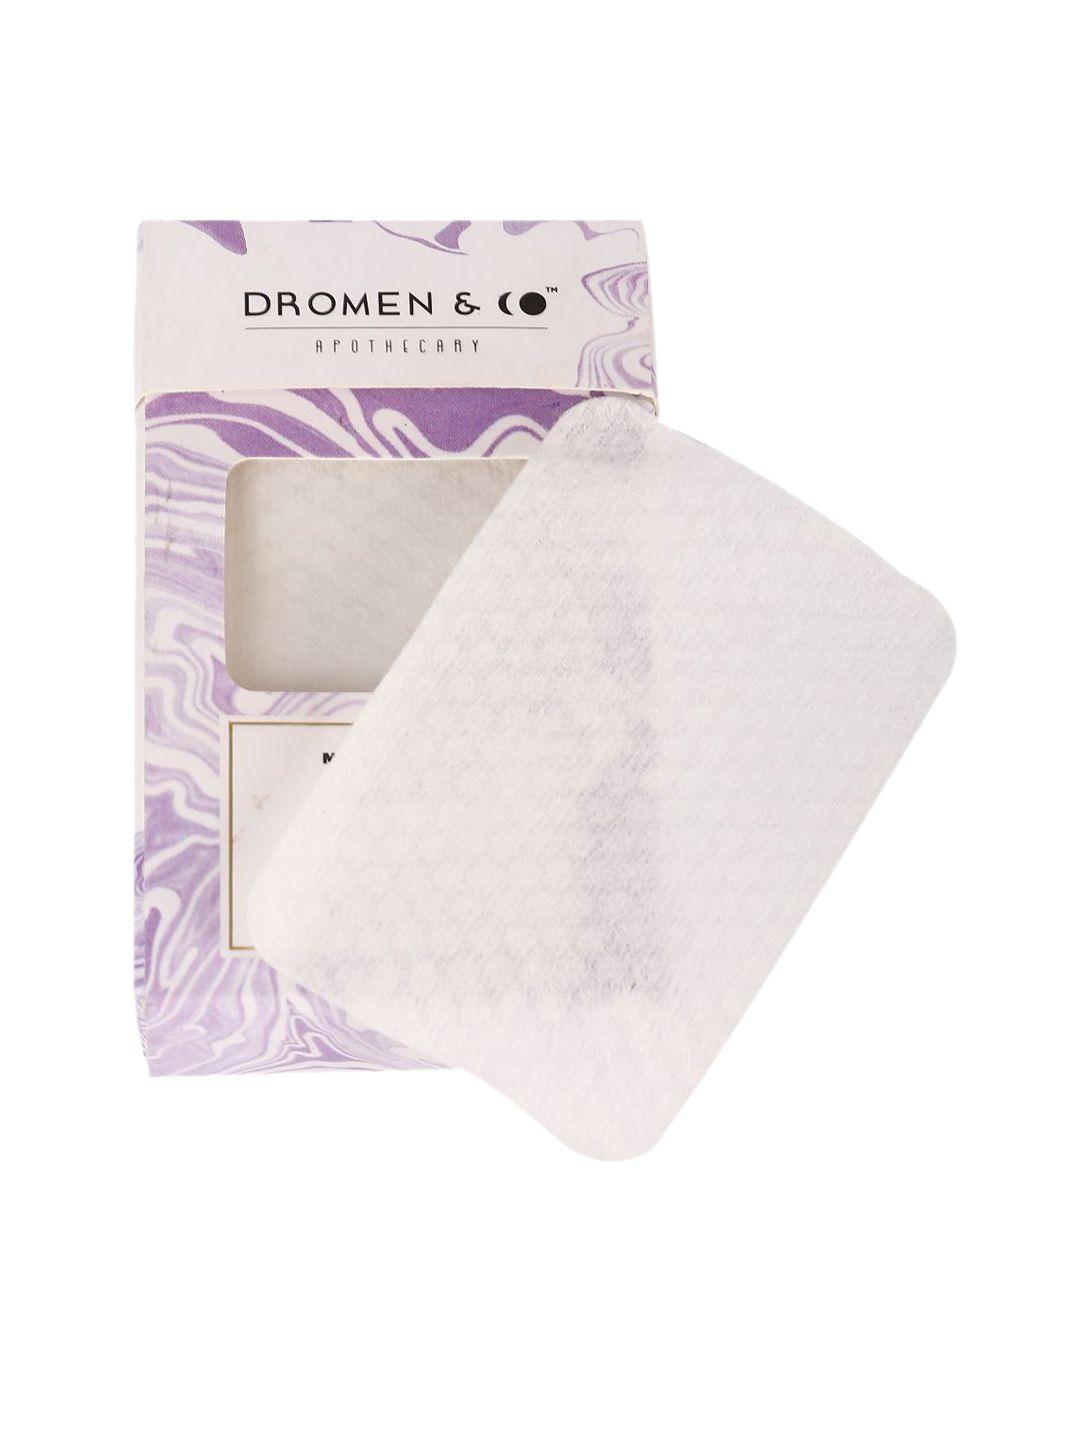 DROMEN & CO 50 sheets Magic Cotton Pads